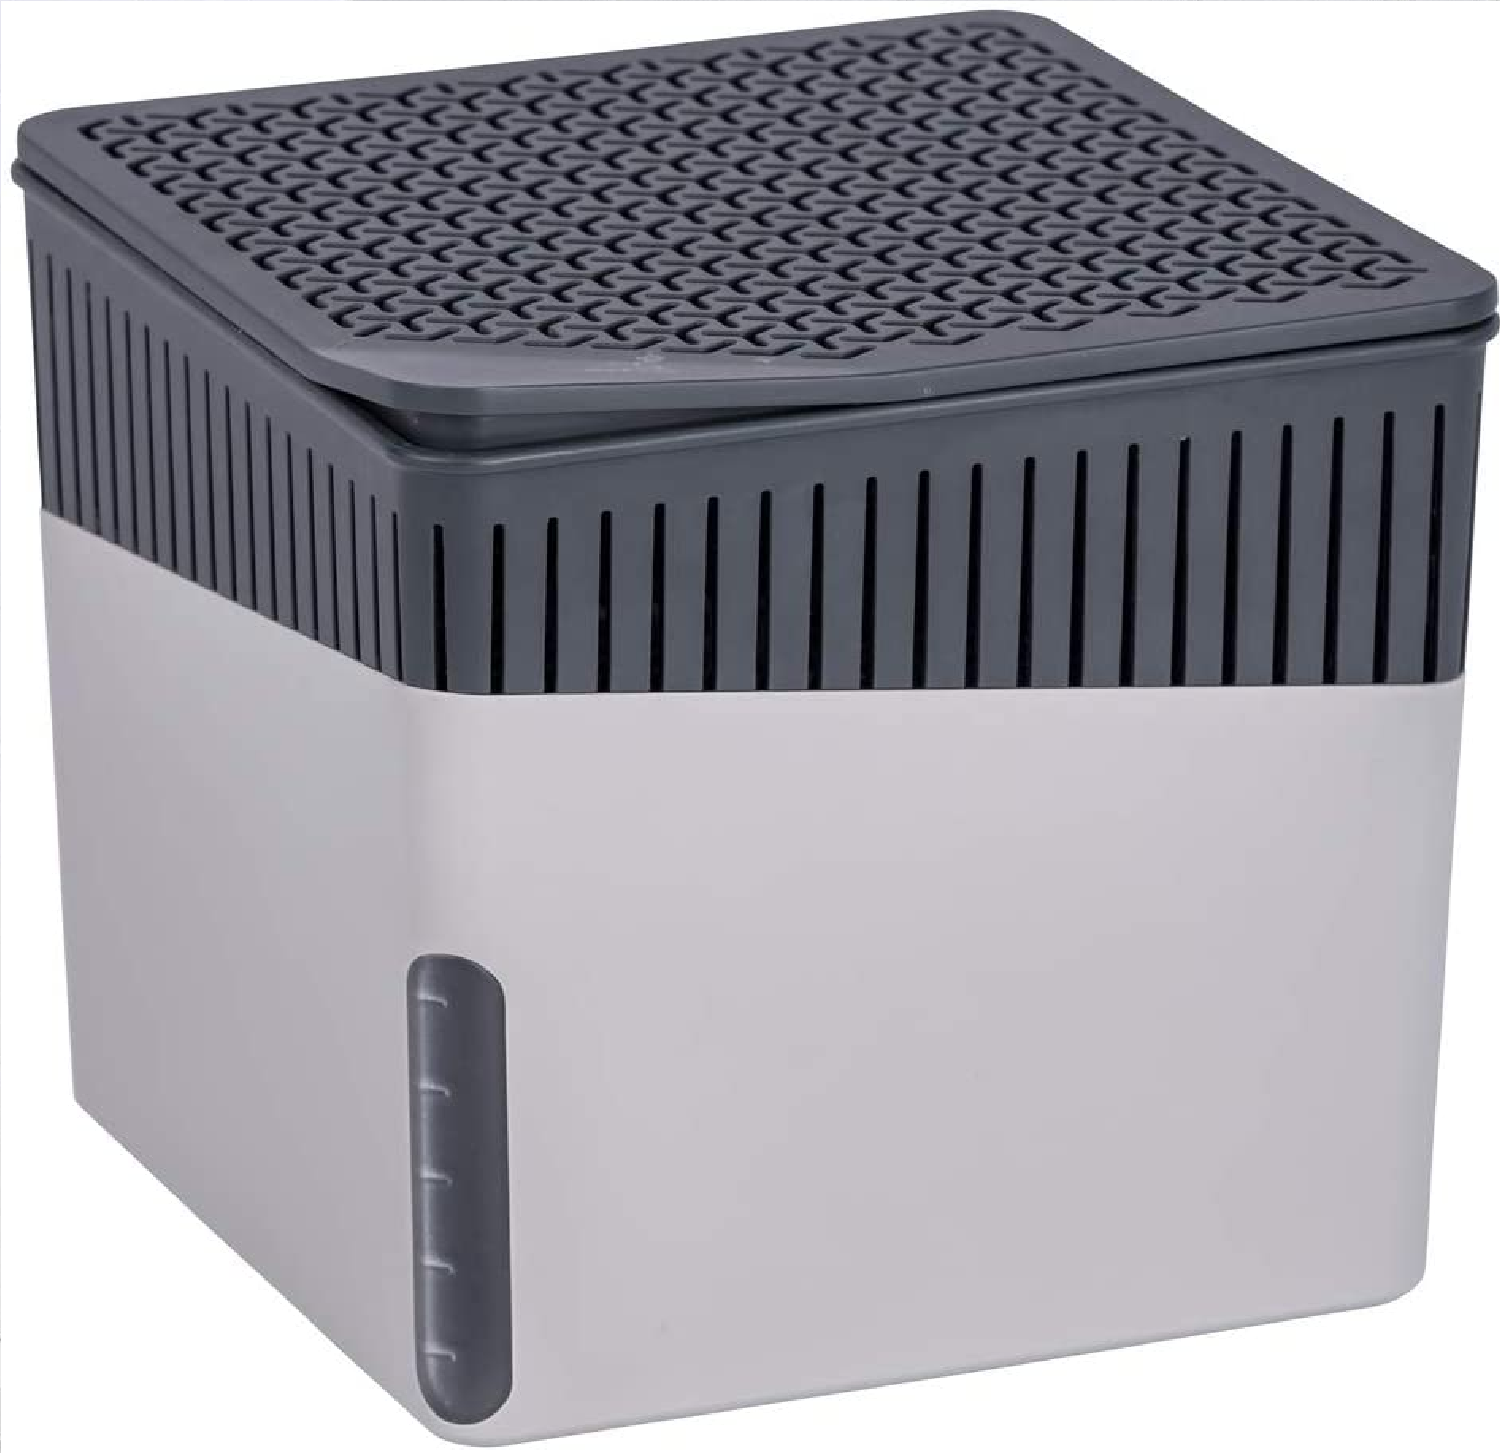 Raumentfeuchter Cube Grau 1000 g - Luftentfeuchter Fassungsvermögen: 1.6 l, Kunststoff (ABS), 16.5 x 15.7 x 16.5 cm, Hellgrau